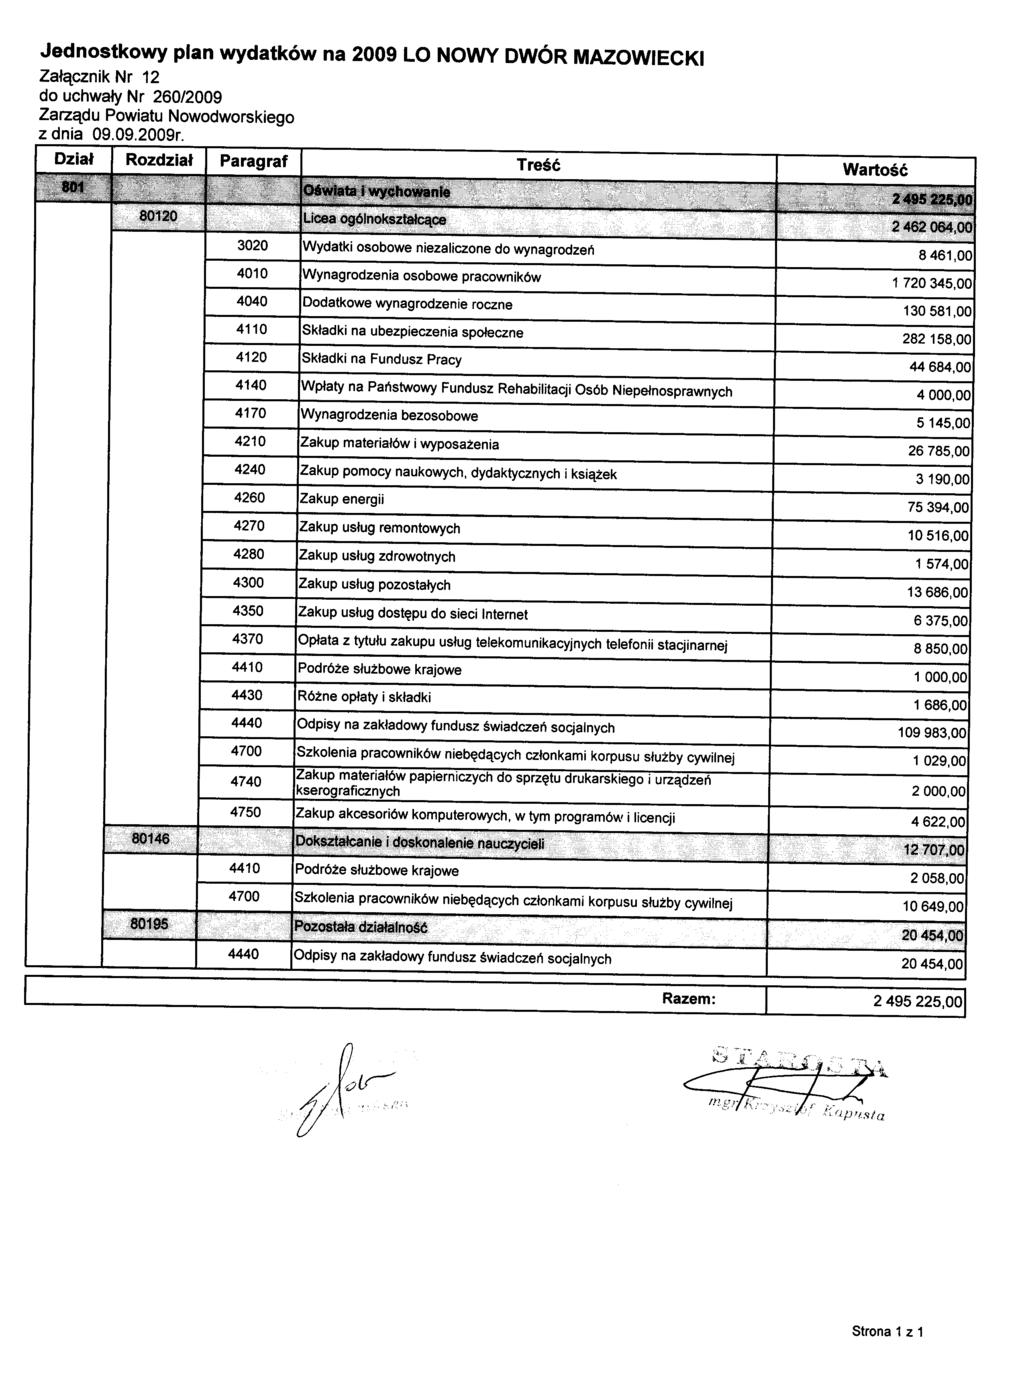 Jednostkowy plan wydatków na 2009 LO NOWY DWÓR MAZOWIECKI Załącznik Nr 12 do uchwały Nr 260/2009 Zarządu Powiatu Nowodworskiego z dnia 09.09.2009r.